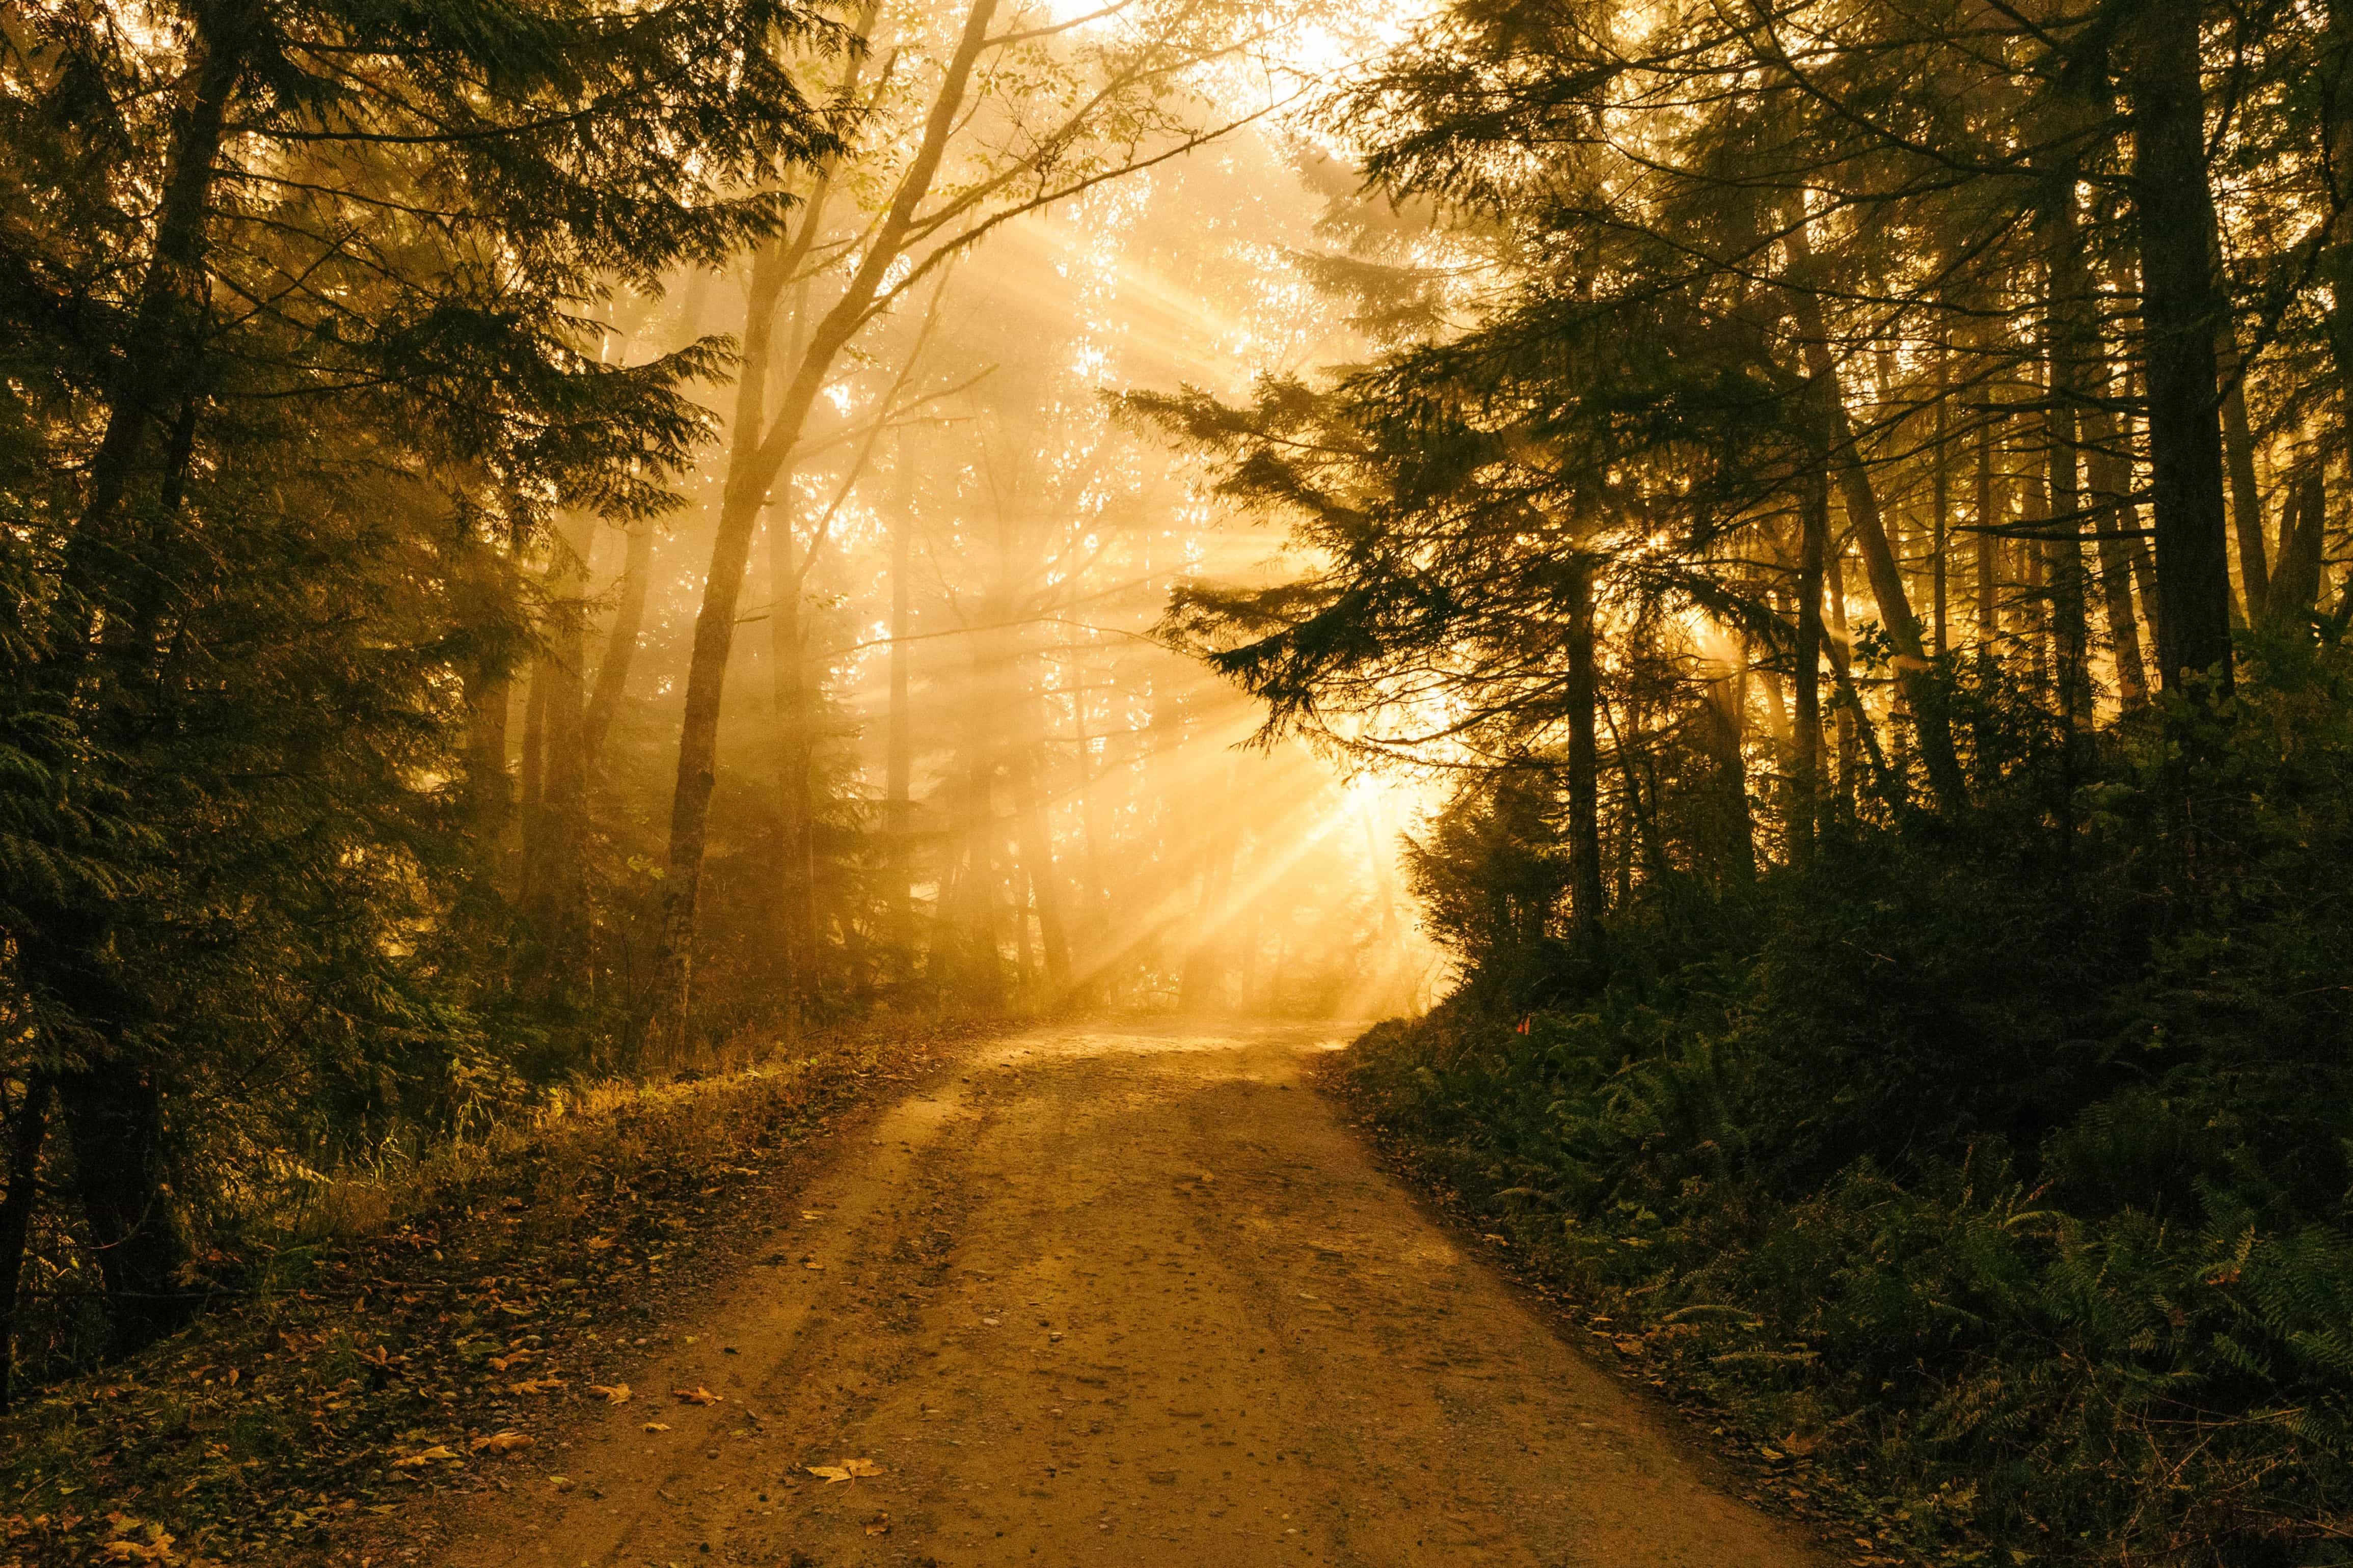 Image libre: route forestière, silhouette, lever du soleil, arbre, bois,  paysage, route, brouillard, aube, brume, nature